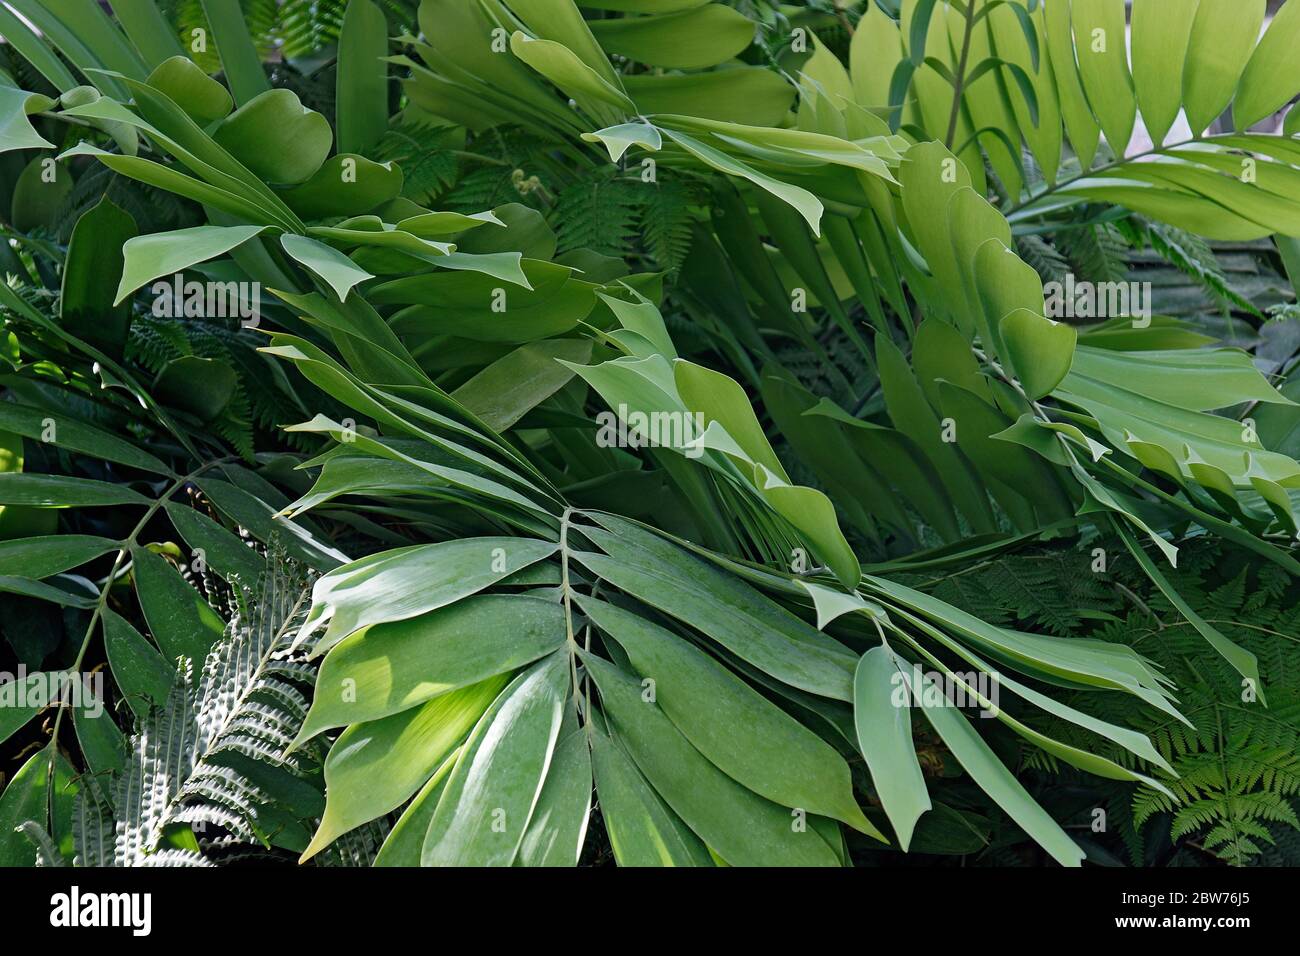 Palmita (Ceratozamia miqueliana) Stock Photo